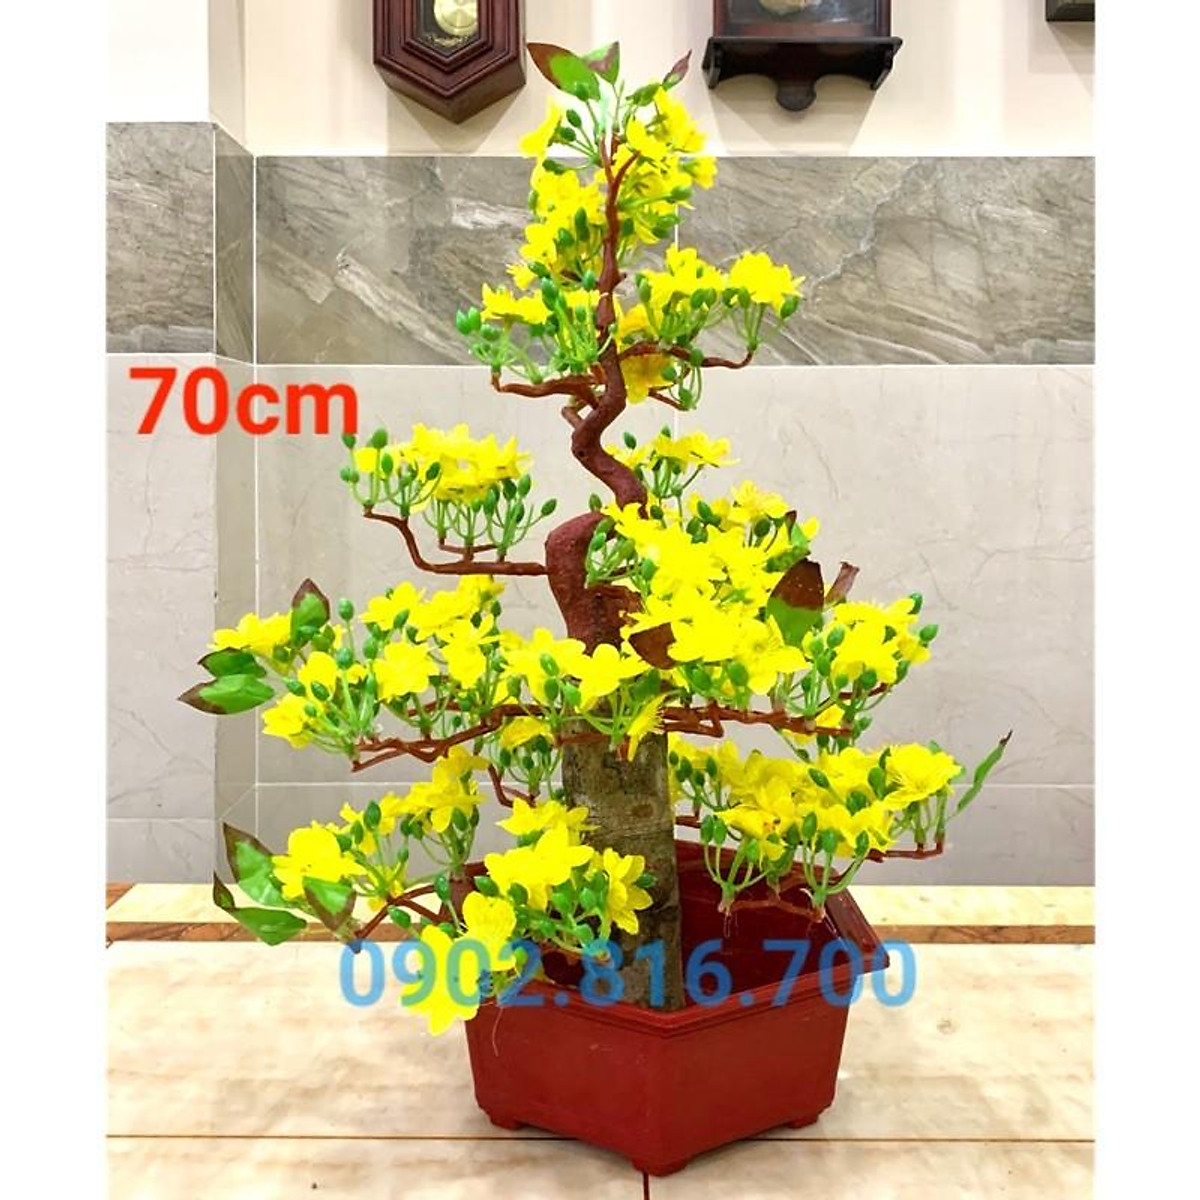 Cây mai bonsai giả để bàn trang trí tết - Hoa trang trí